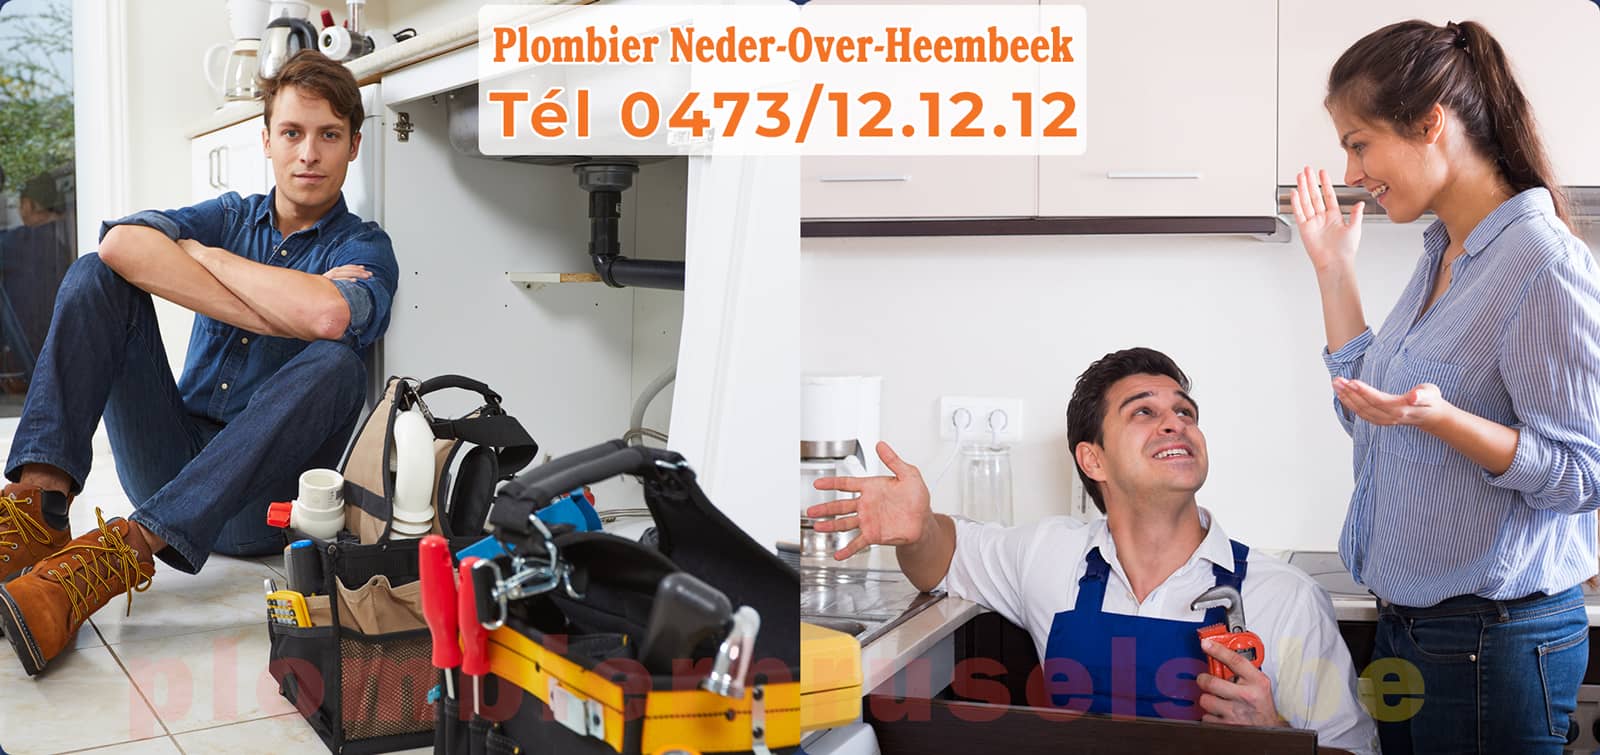 Plombier Neder-Over-Heembeek service de Plomberie tél 0473/12.12.12